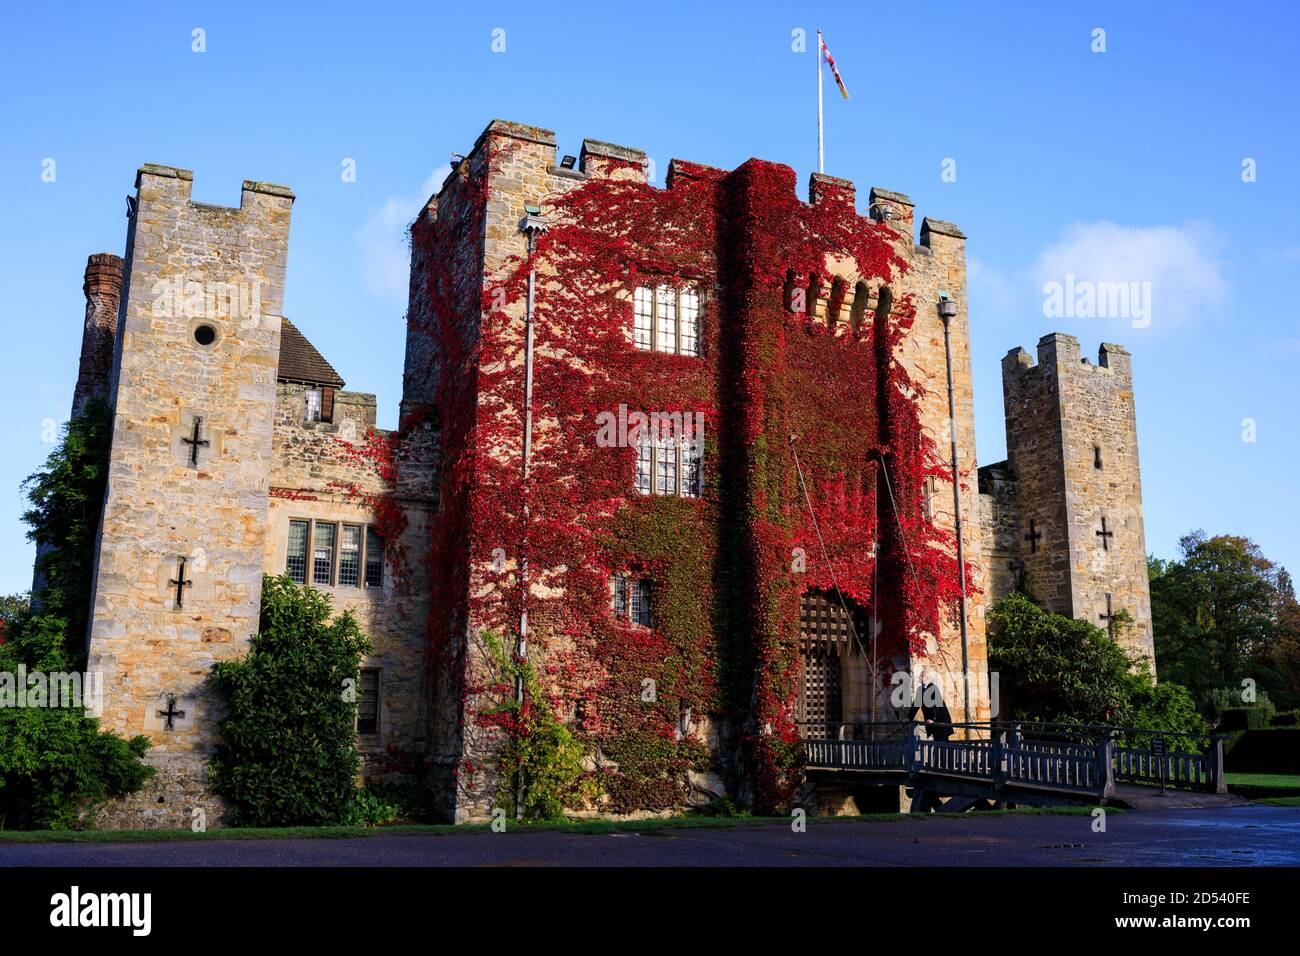 Hever Castle in Kent, Großbritannien. Die Burg stammt aus dem 125. Jahrhundert und war einst das Elternhaus von Anne Boleyn, der zweiten Frau von Heinrich VIII. Und Mutter von Elisabeth I., inmitten eines   Hektar großen, herrlichen Geländes. Stockfoto